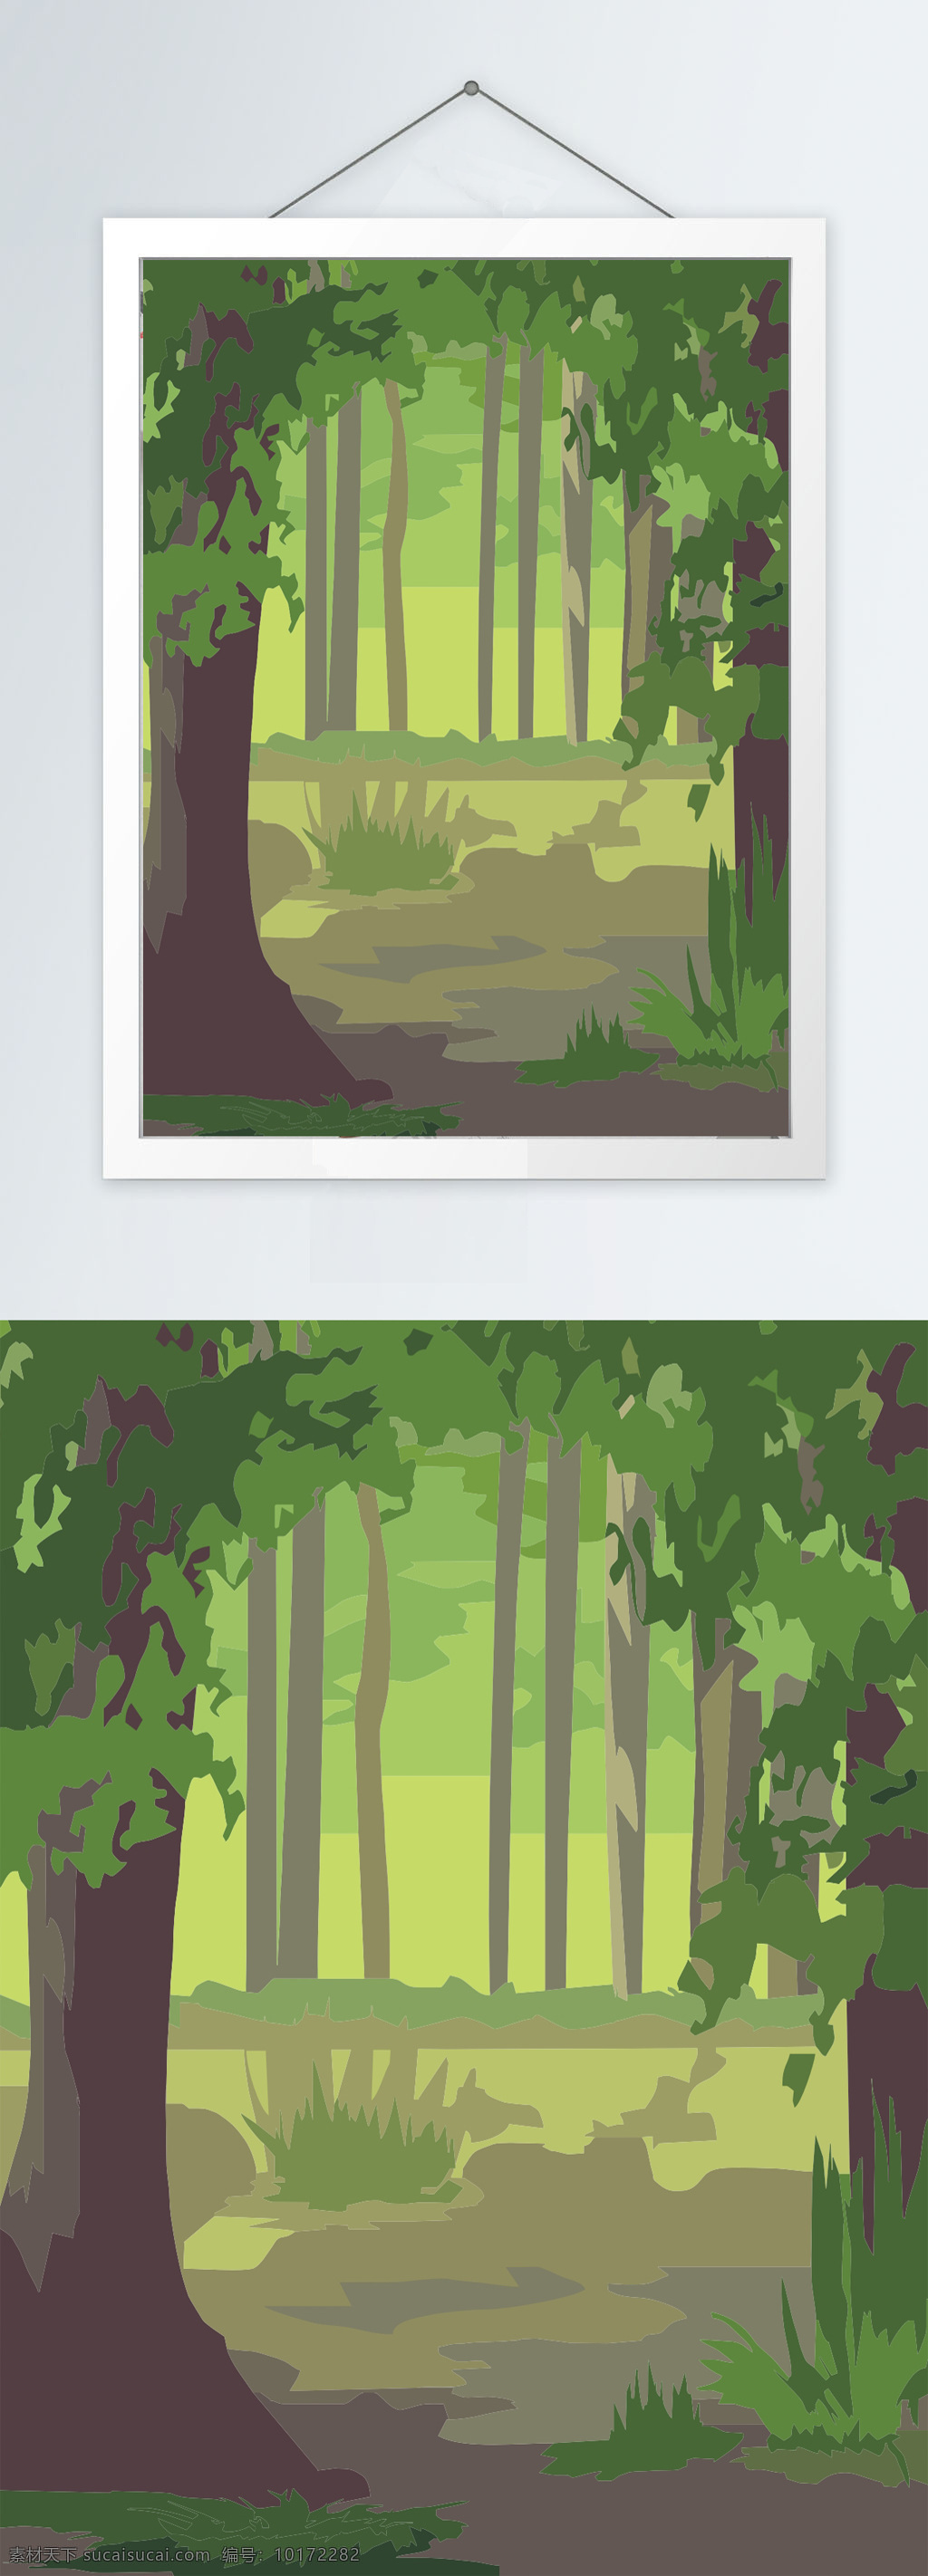 室内 森林 风景 装饰画 室内画 风景画 森林画 森林彩色